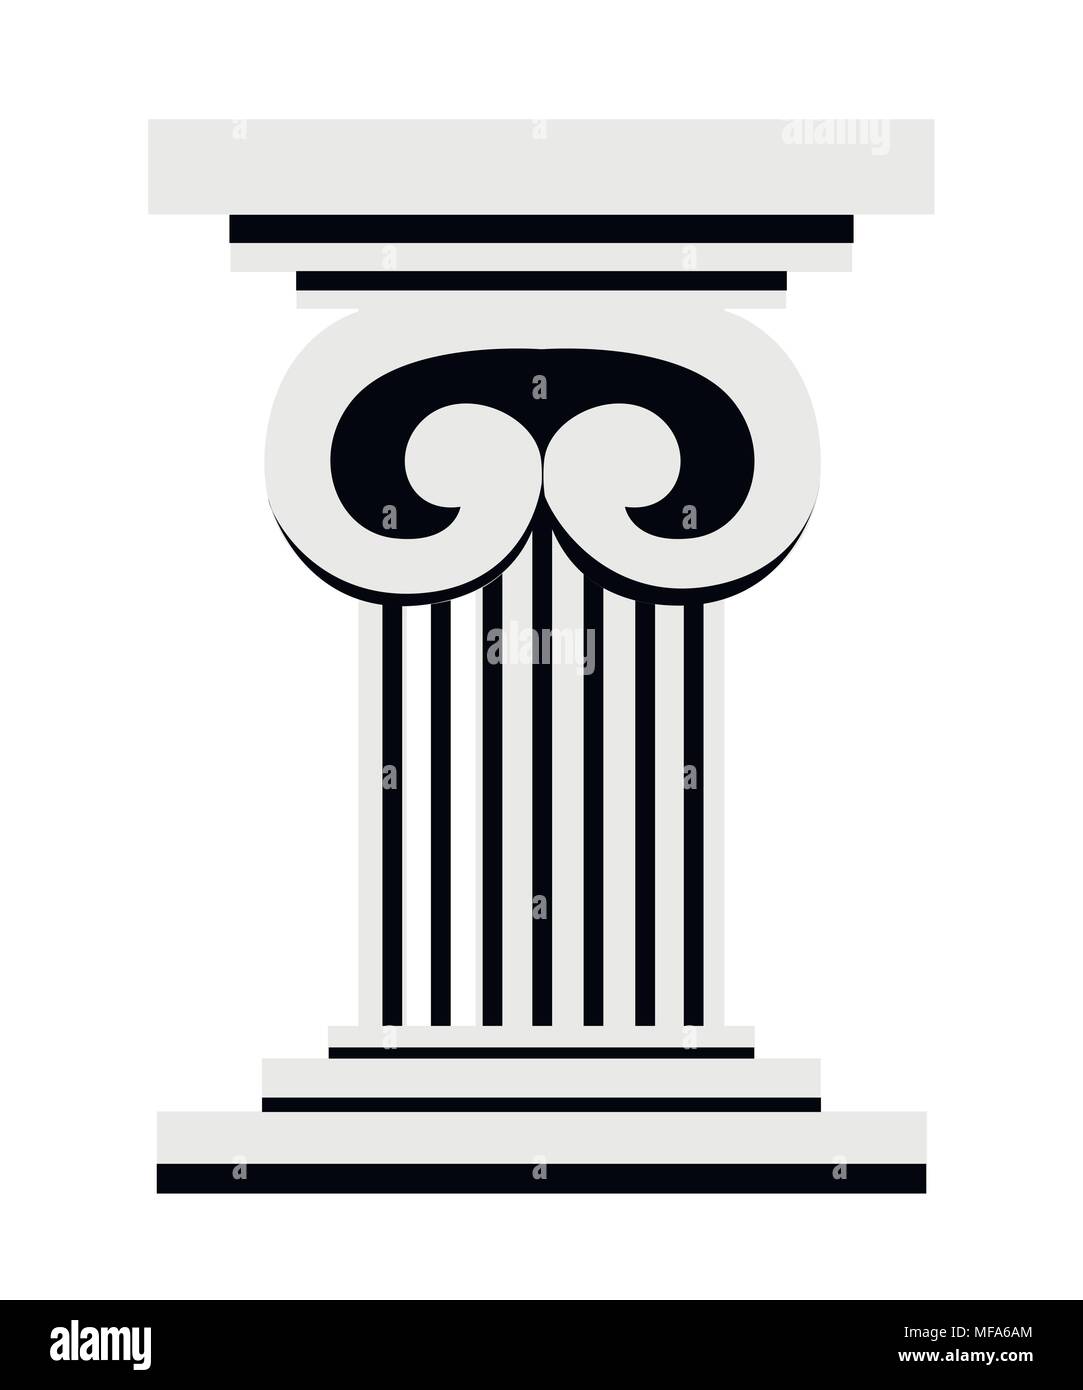 Socle colonne romaine ou pilier. Télévision style design. Vector illustration isolé sur fond blanc. La page du site Web et application mobile. Illustration de Vecteur